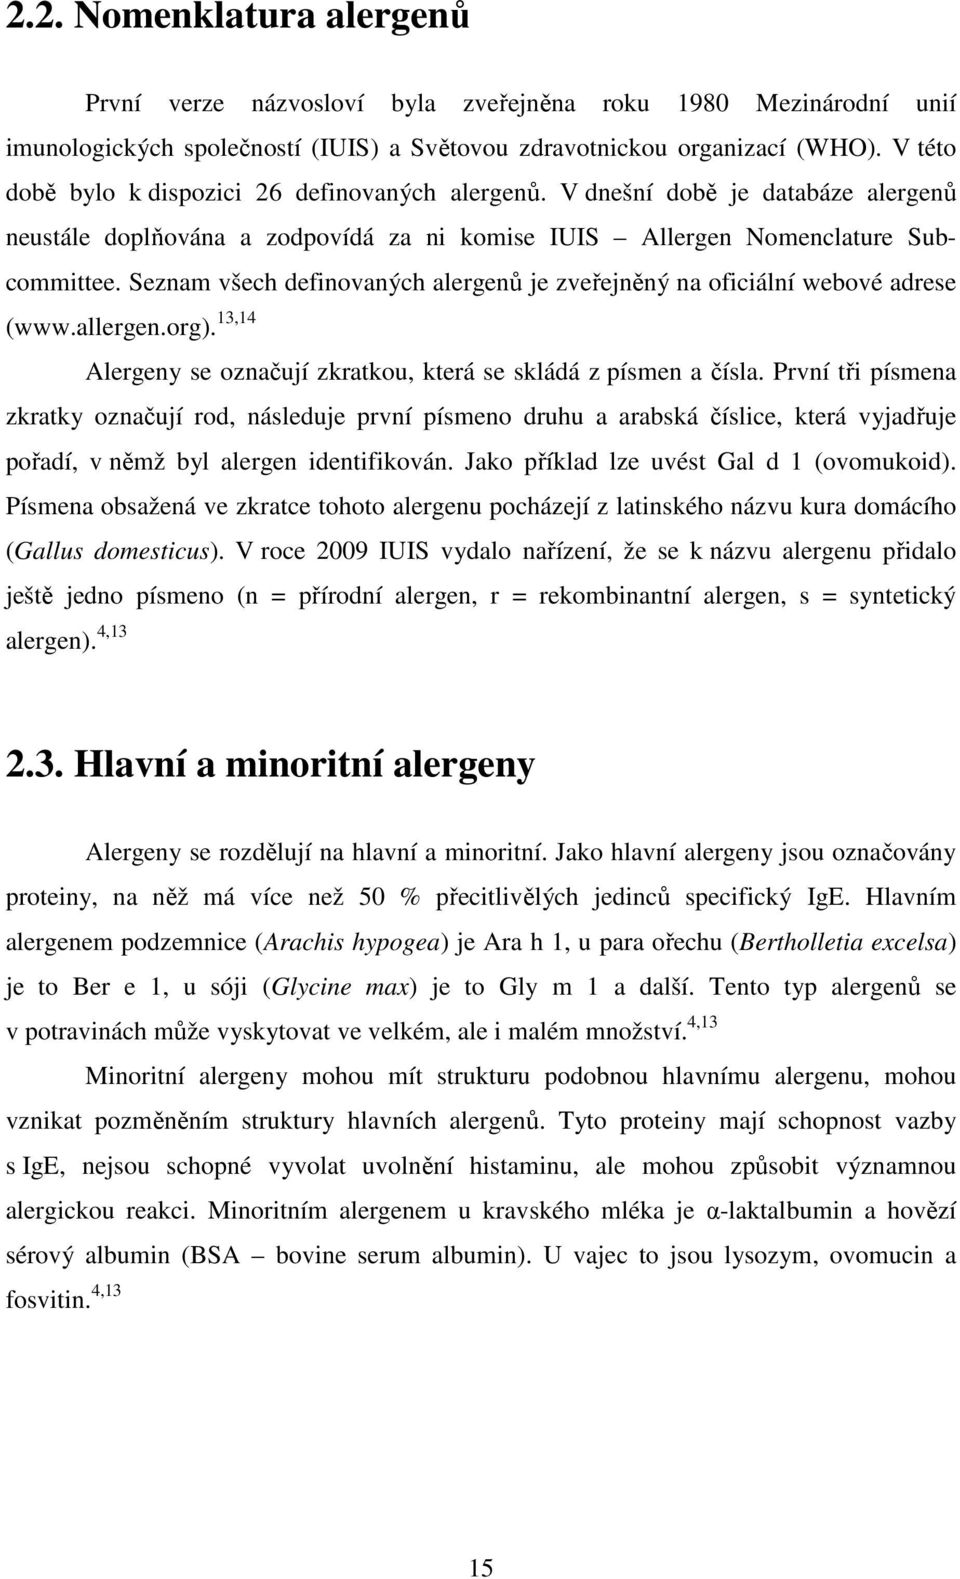 Seznam všech definovaných alergenů je zveřejněný na oficiální webové adrese (www.allergen.org). 13,14 Alergeny se označují zkratkou, která se skládá z písmen a čísla.